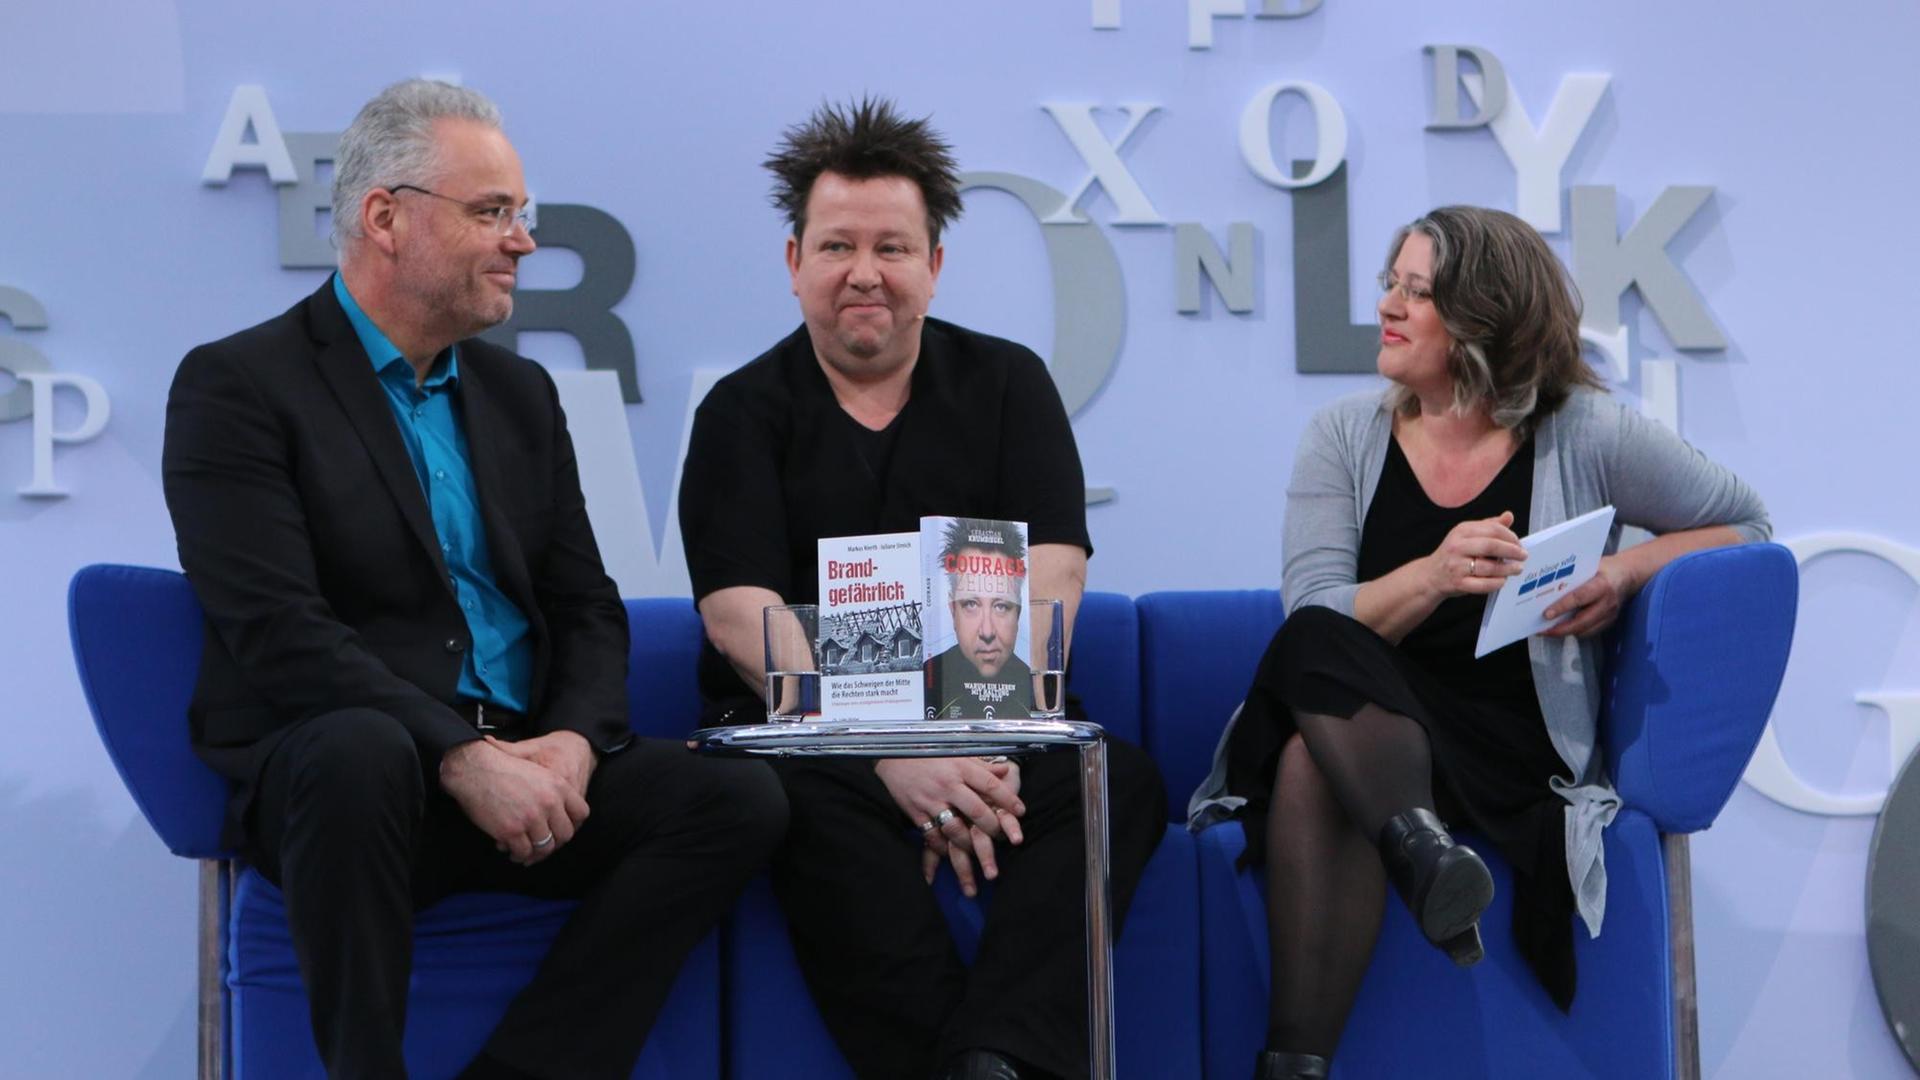 Markus Nierth, Sebastian Krumbiegel und Marie Sagenschneider auf dem blauen Sofa